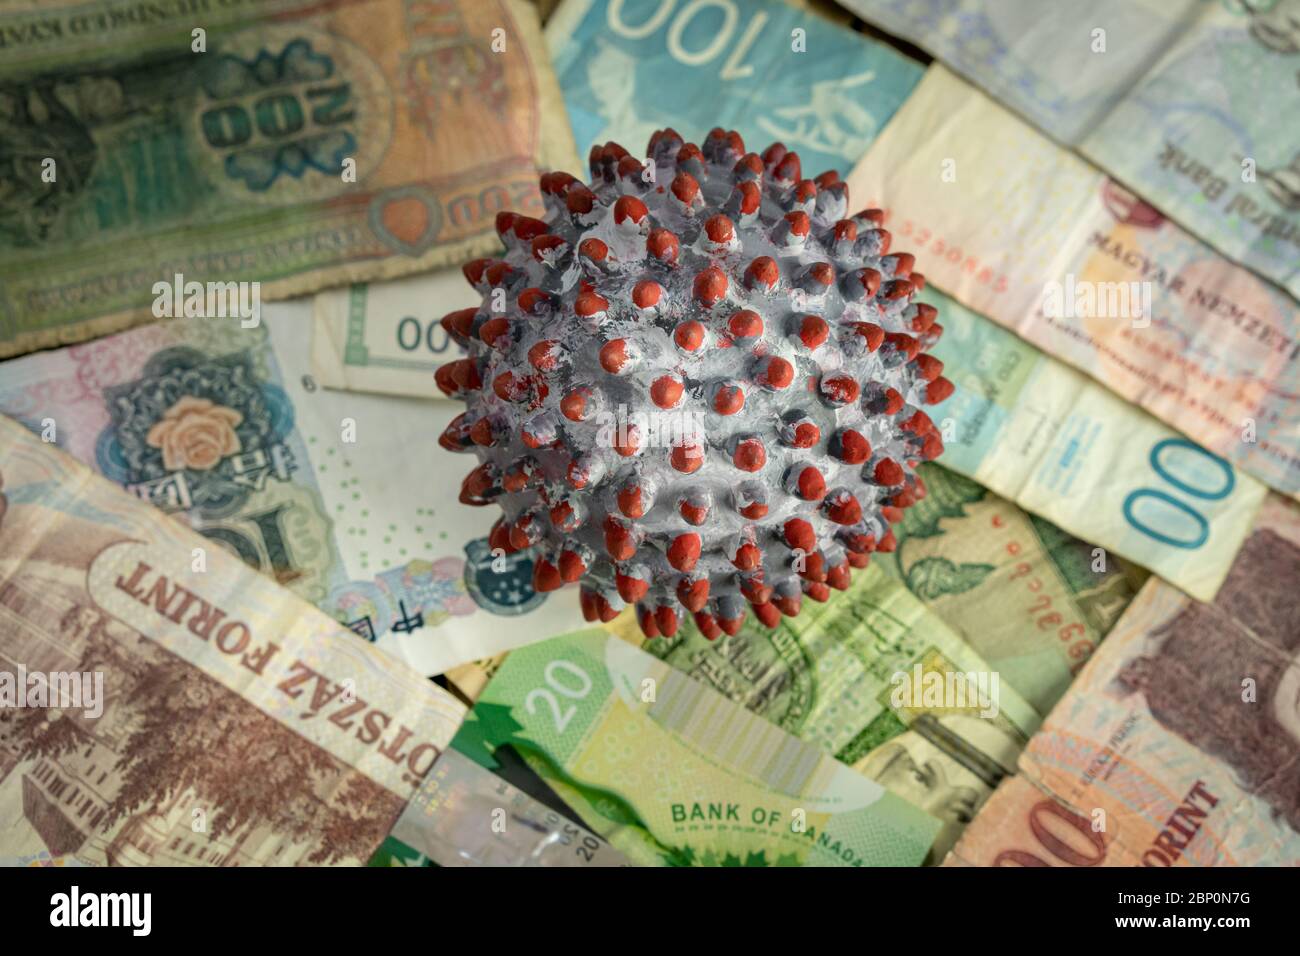 Una bola pintada como un virión SARS-CoV-2 en medio de muchos billetes de diferentes países Foto de stock